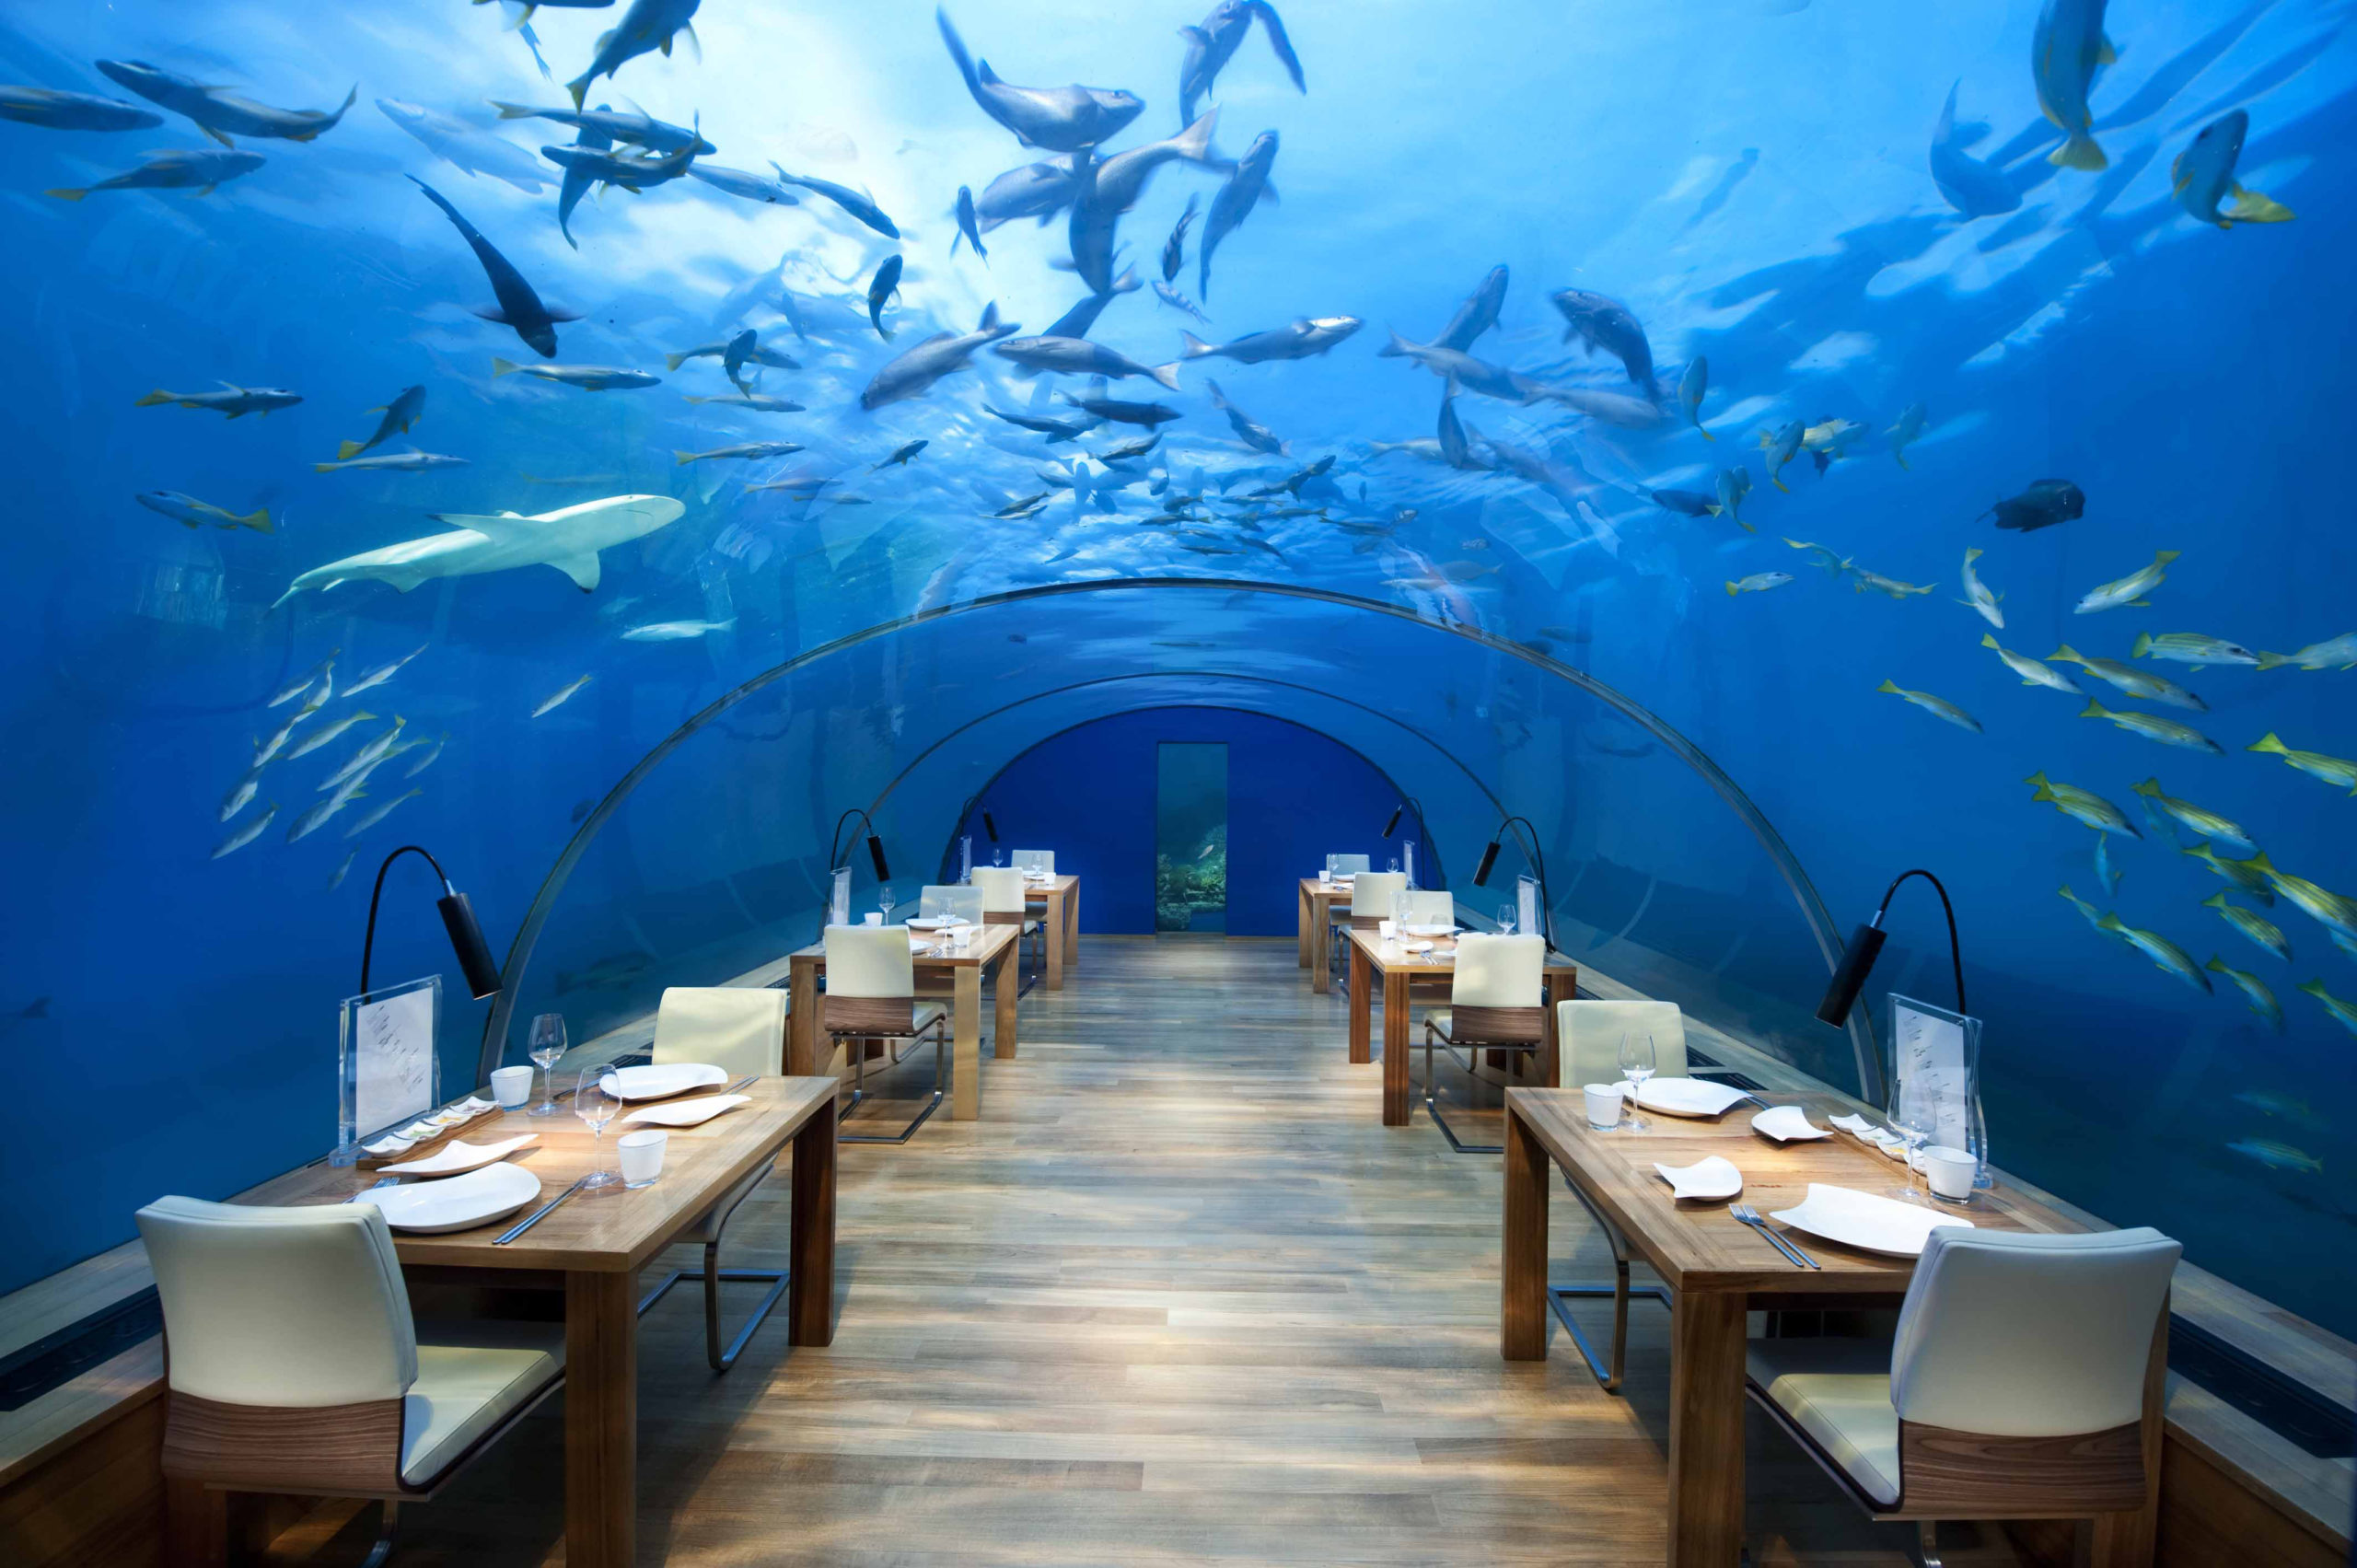 Ithaa undersea restaurant